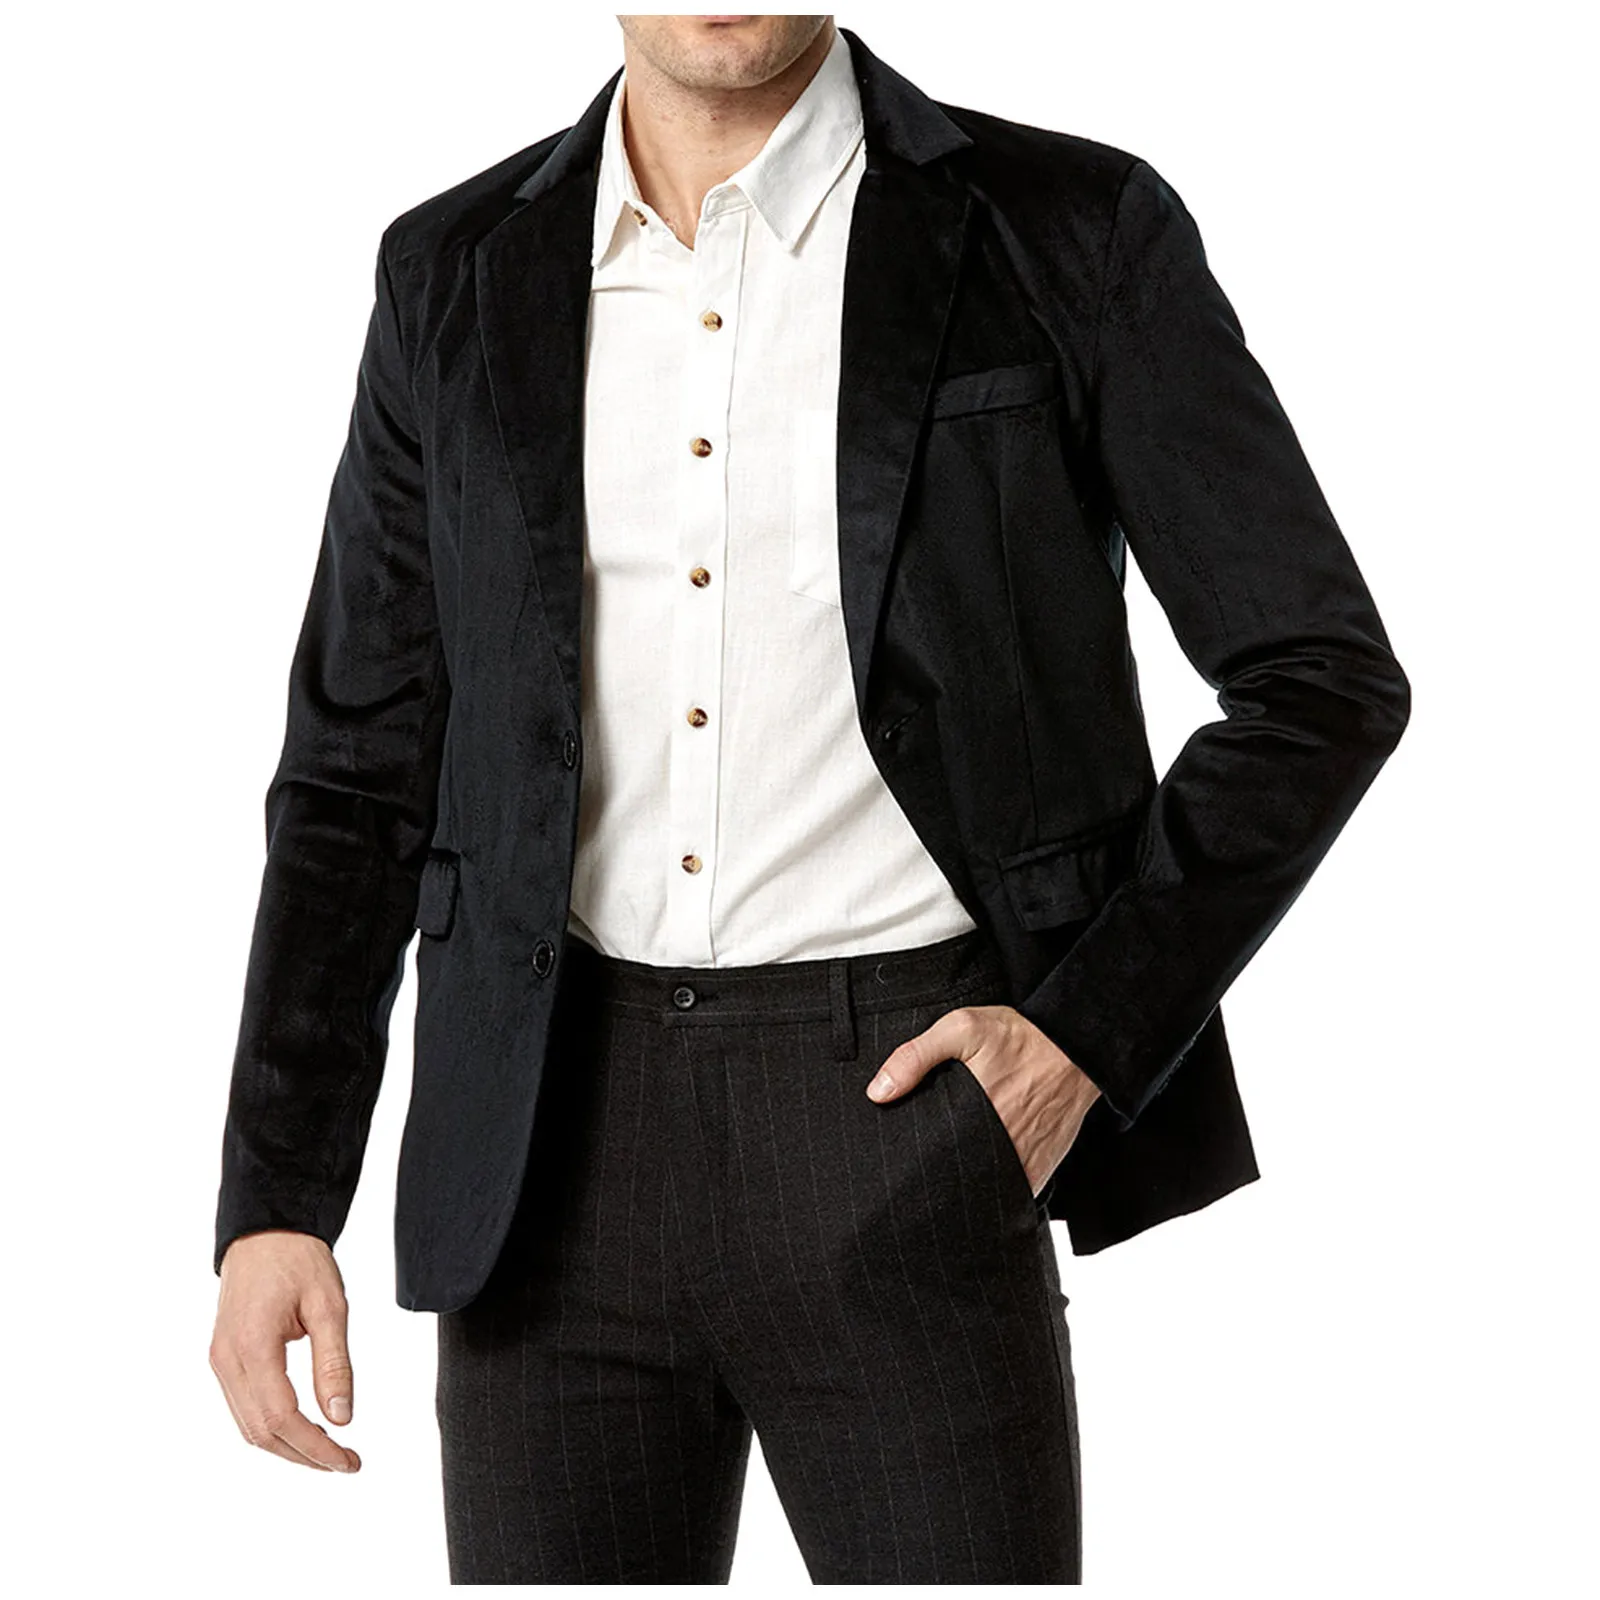  Повседневное пальто Мужчины Облегающий льняной топ с карманом Повседневный однотонный костюм с длинным рукавом Мешковатый красивый пиджак Мужская верхняя одежда